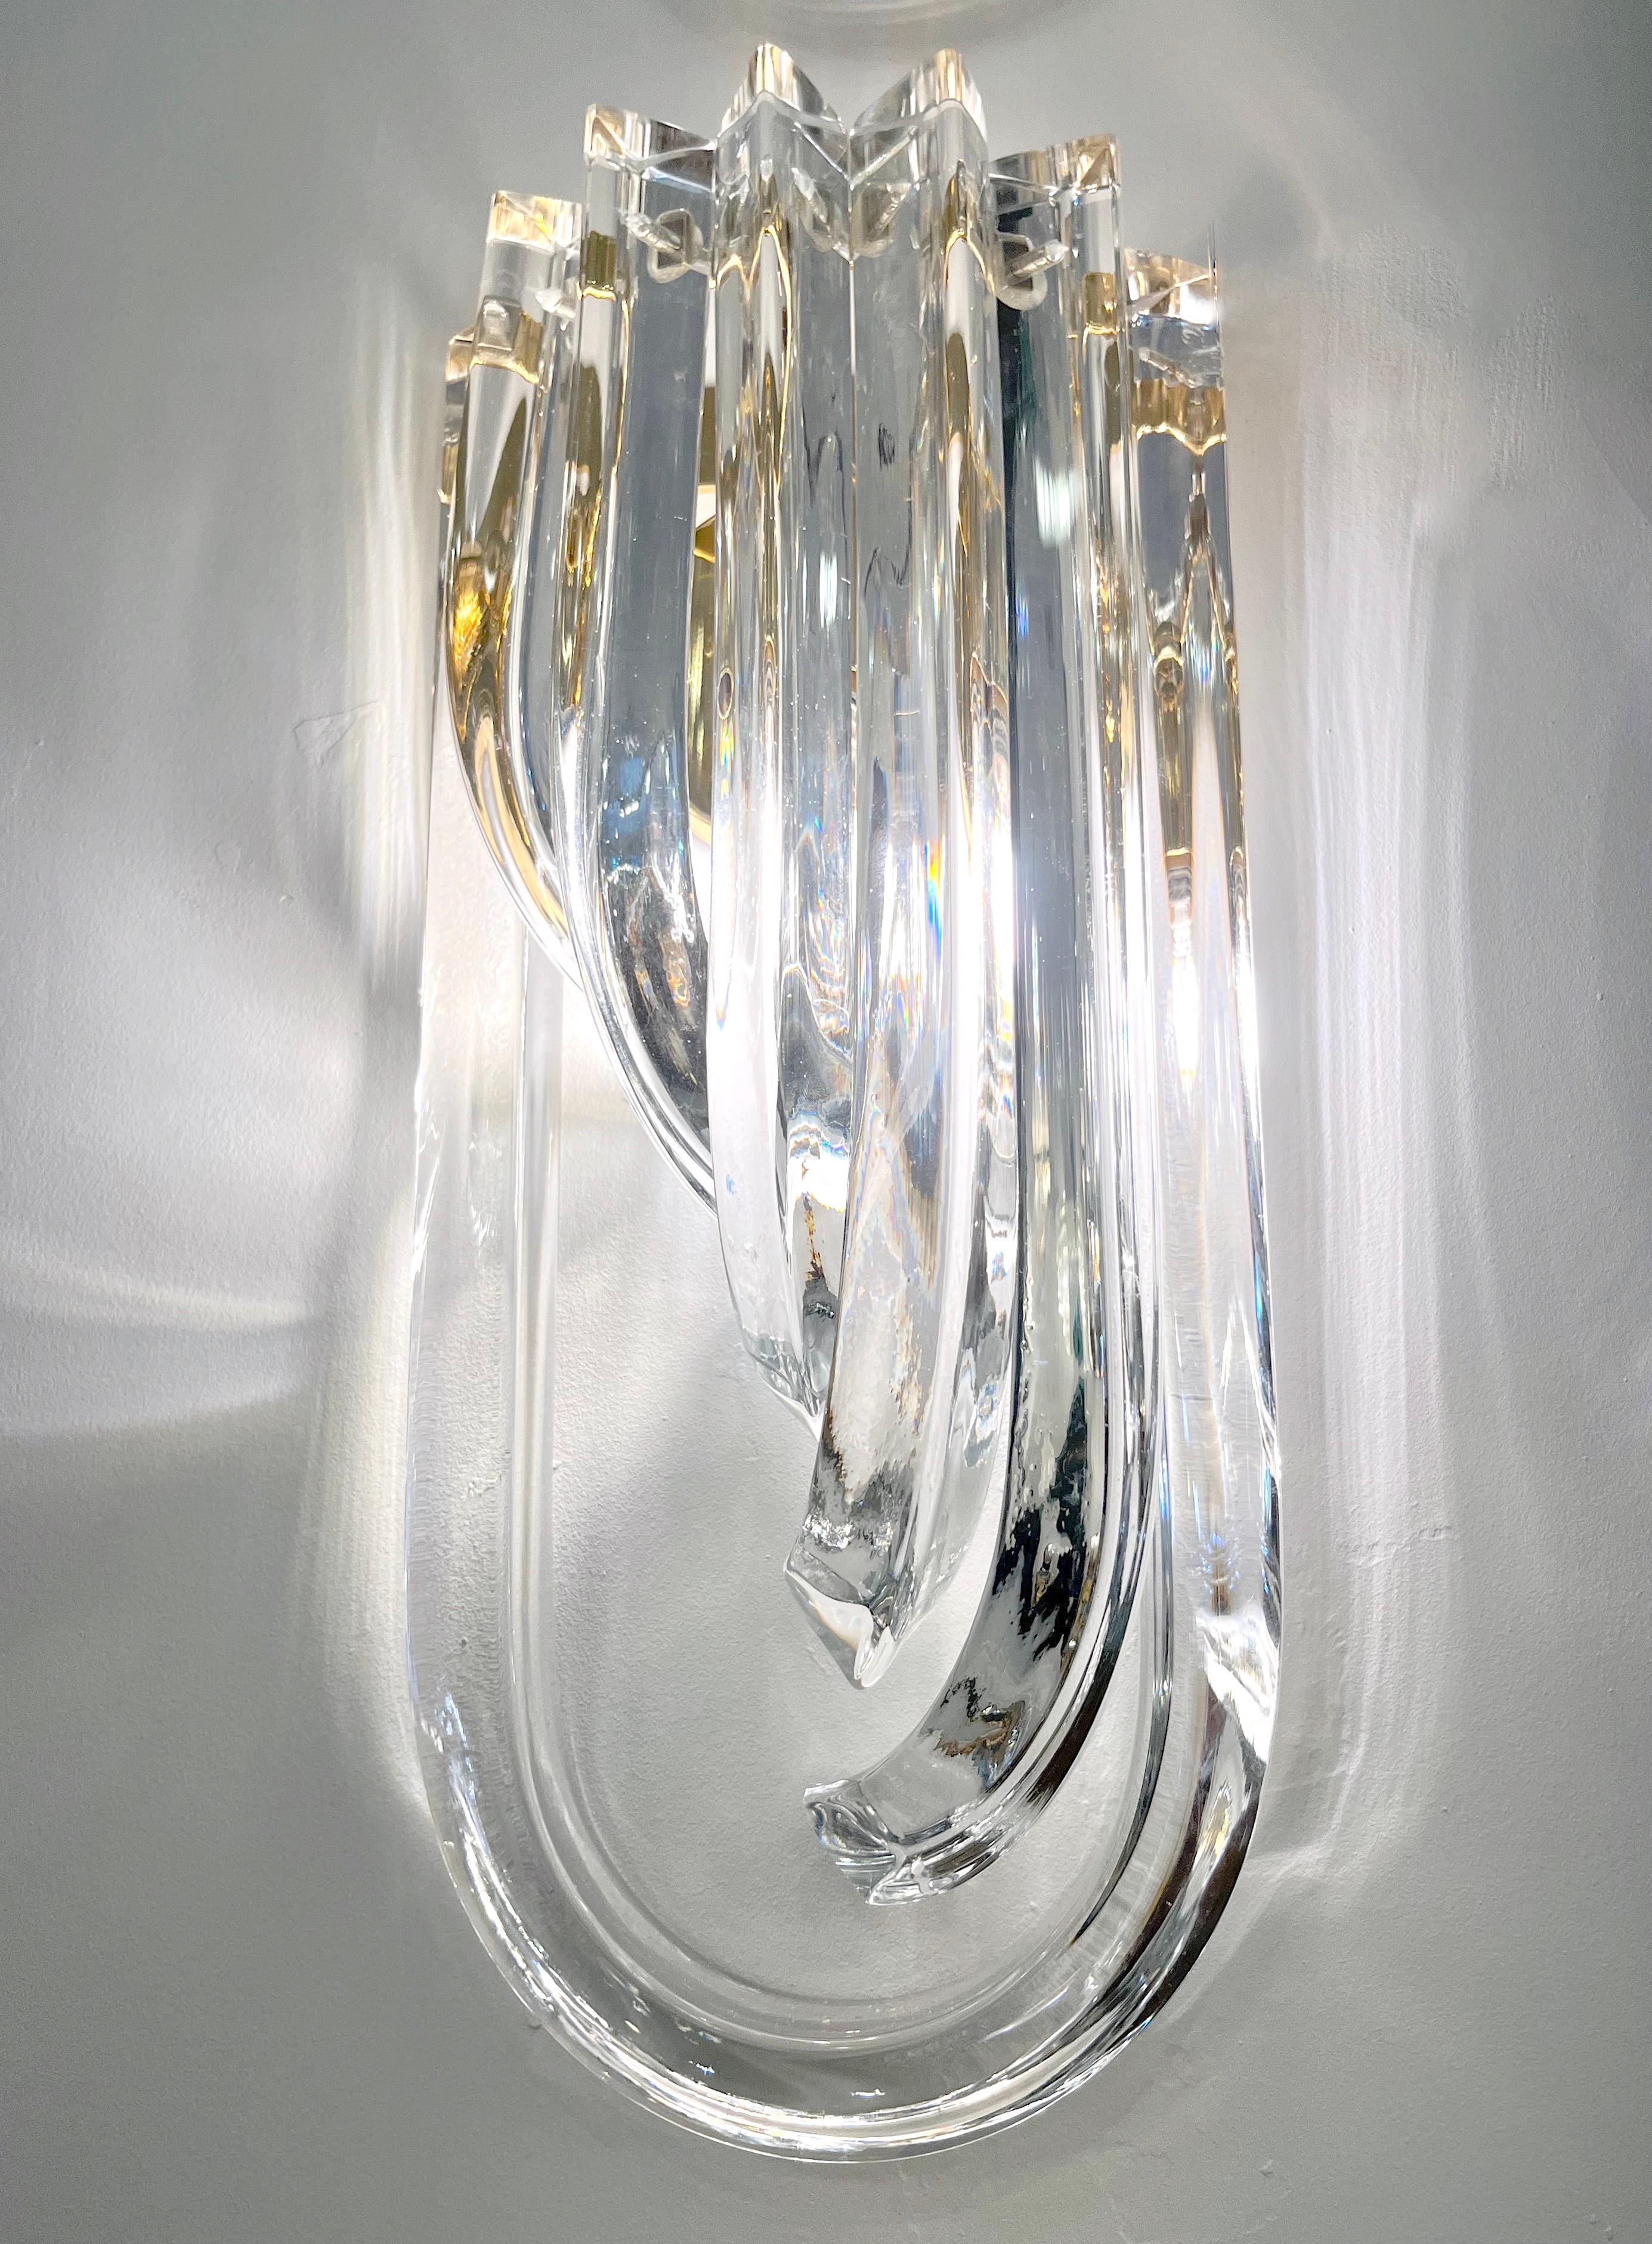 Sehr schlankes, elegantes venezianisch-modernistisches Wandleuchtenpaar mit organischem, minimalistischem Design und Art-Déco-Flair, bestehend aus sechs sich umarmenden, spektakulär geschwungenen Stäben aus kristallklarem, mundgeblasenem